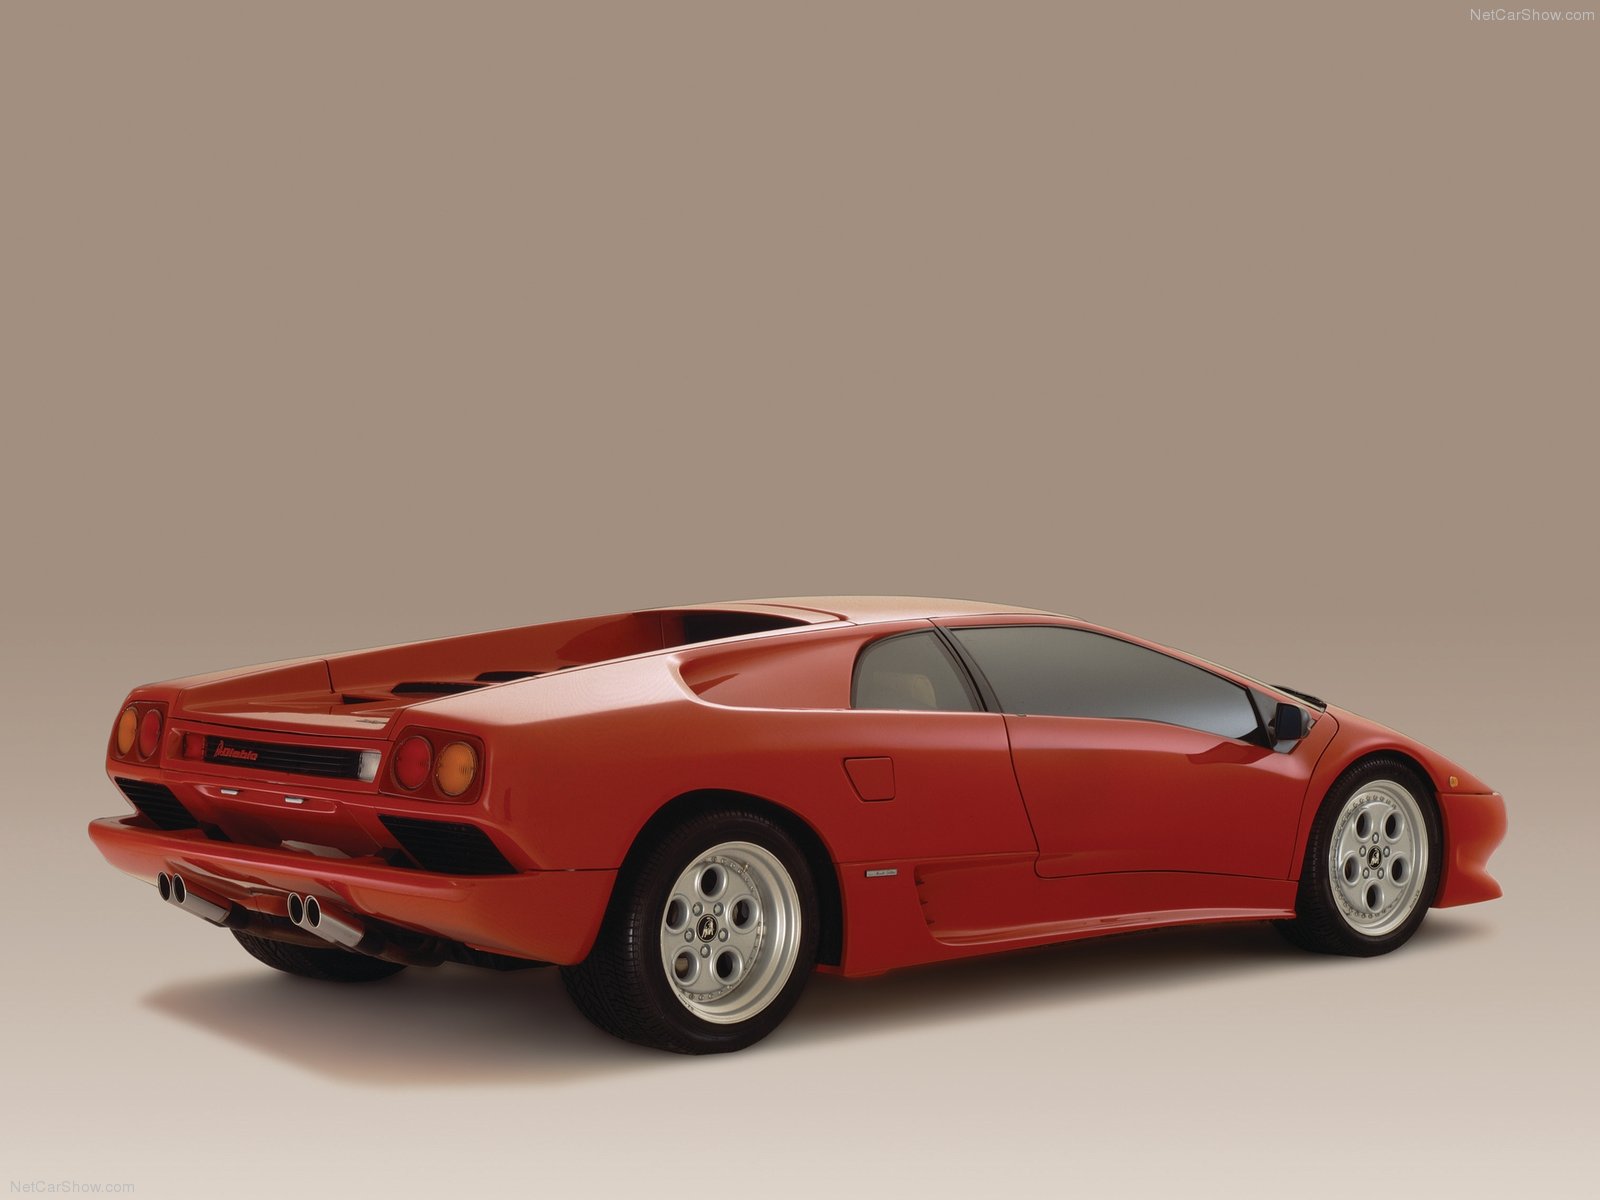 De nye reglene er foreslått å ha tilbakevirkende kraft, så hvis du har en 1990 Lamborghini Diablo må du gjennomgå nødvendig kjøreopplæring.